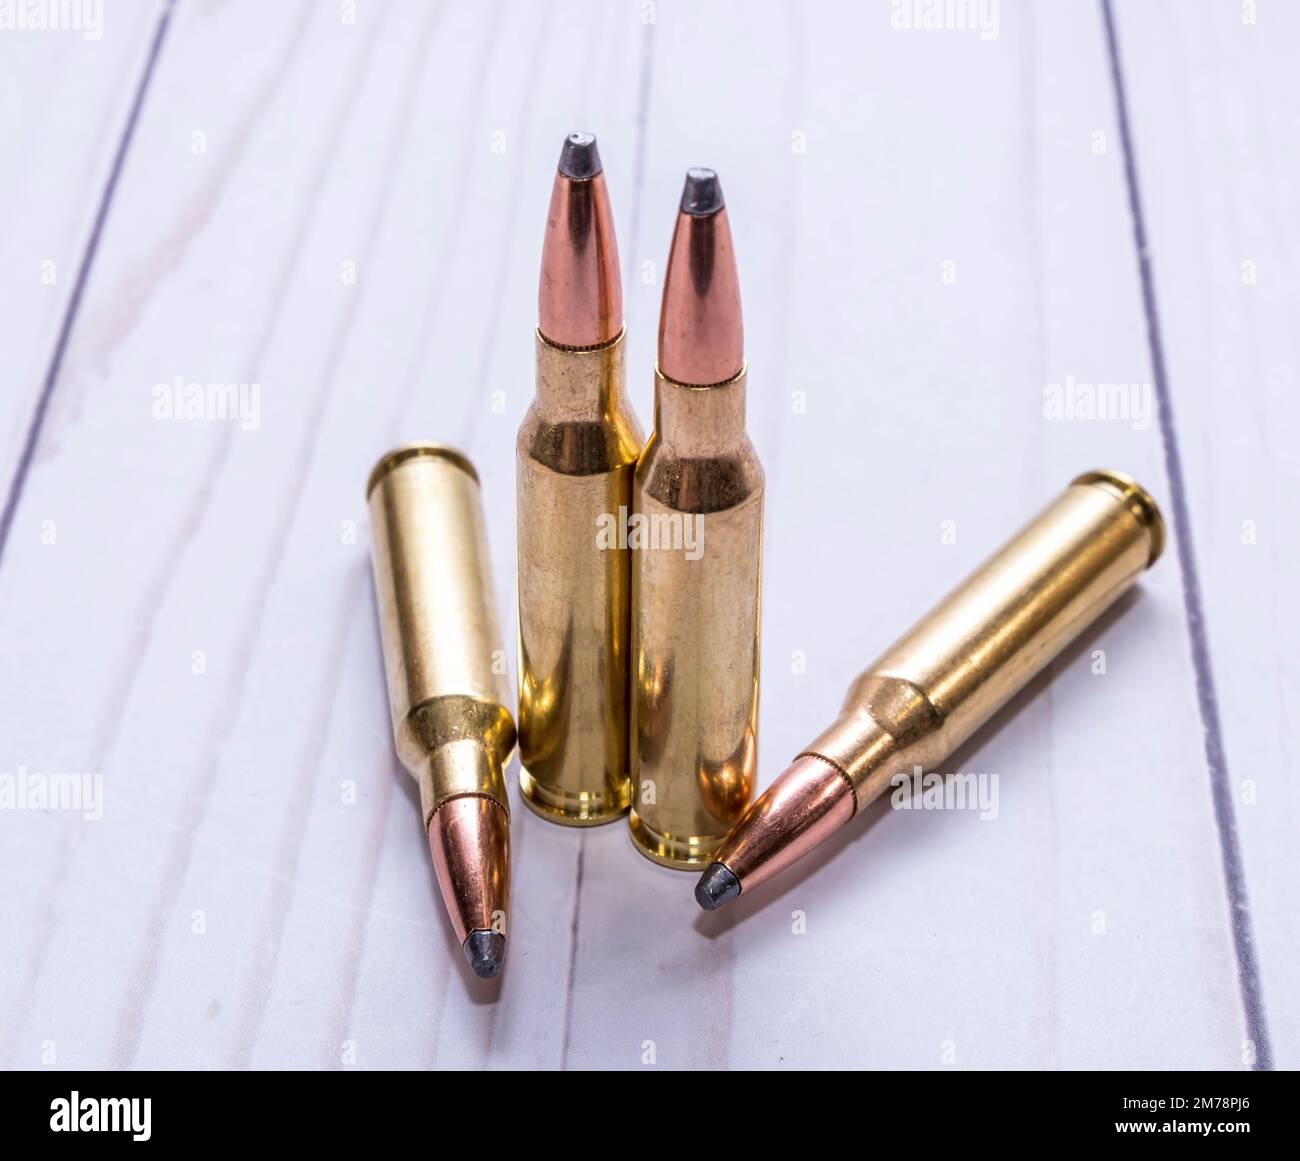 Vier Kugeln für die Jagd, zwei Kaliber 30,06 und zwei Kaliber 7mm-08 zusammen auf weißem Holzhintergrund Stockfoto